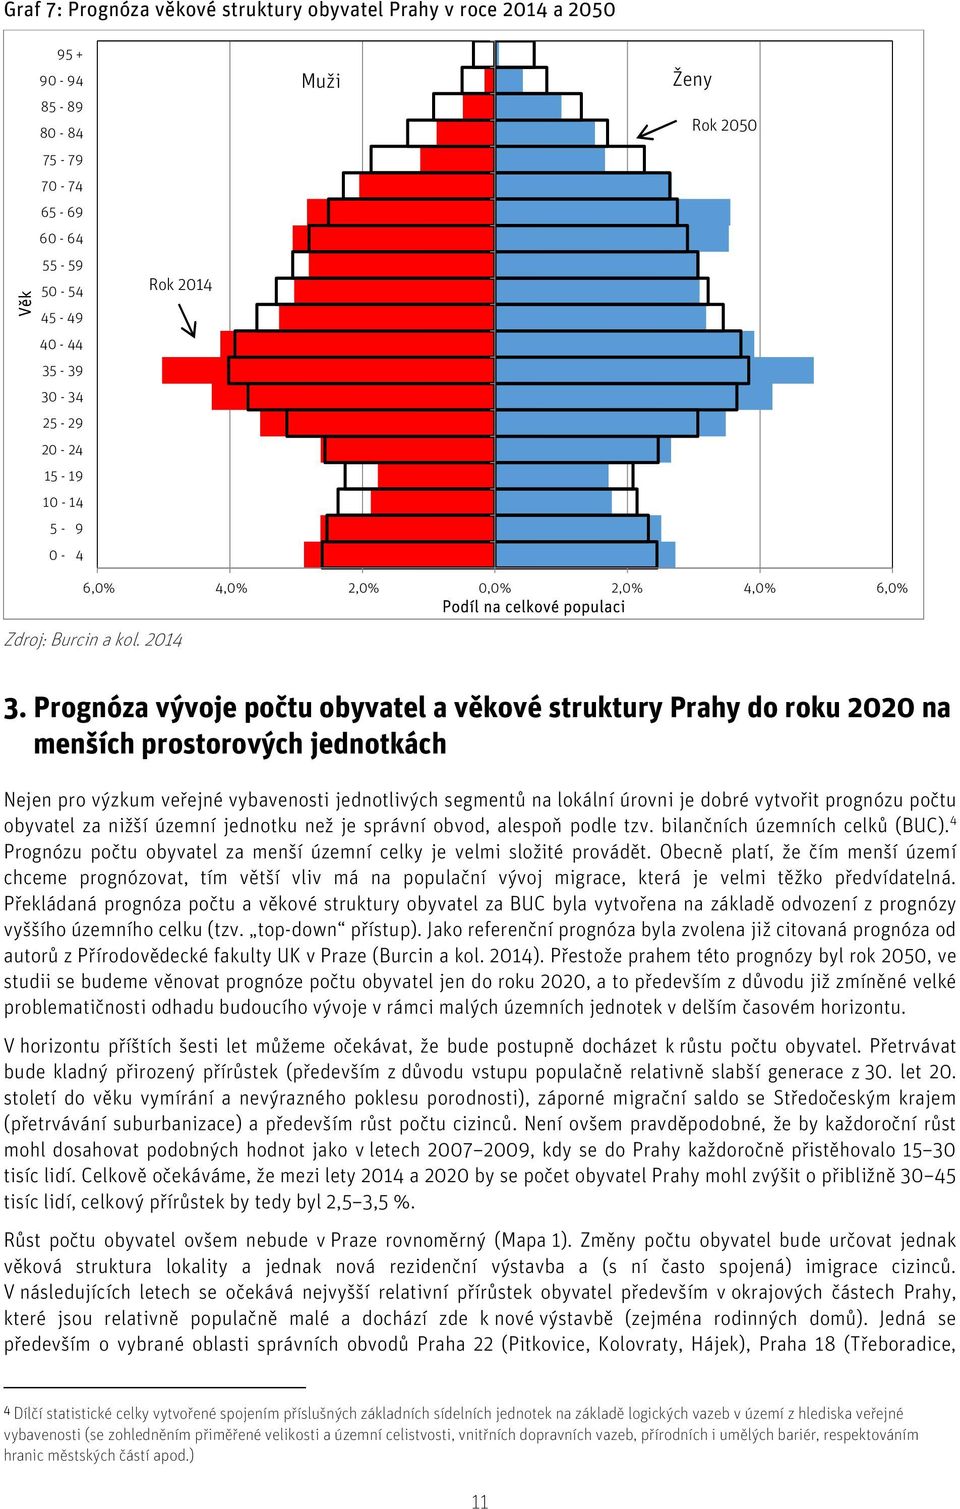 Prognóza vývoje počtu obyvatel a věkové struktury Prahy do roku 2020 na menších prostorových jednotkách Nejen pro výzkum veřejné vybavenosti jednotlivých segmentů na lokální úrovni je dobré vytvořit